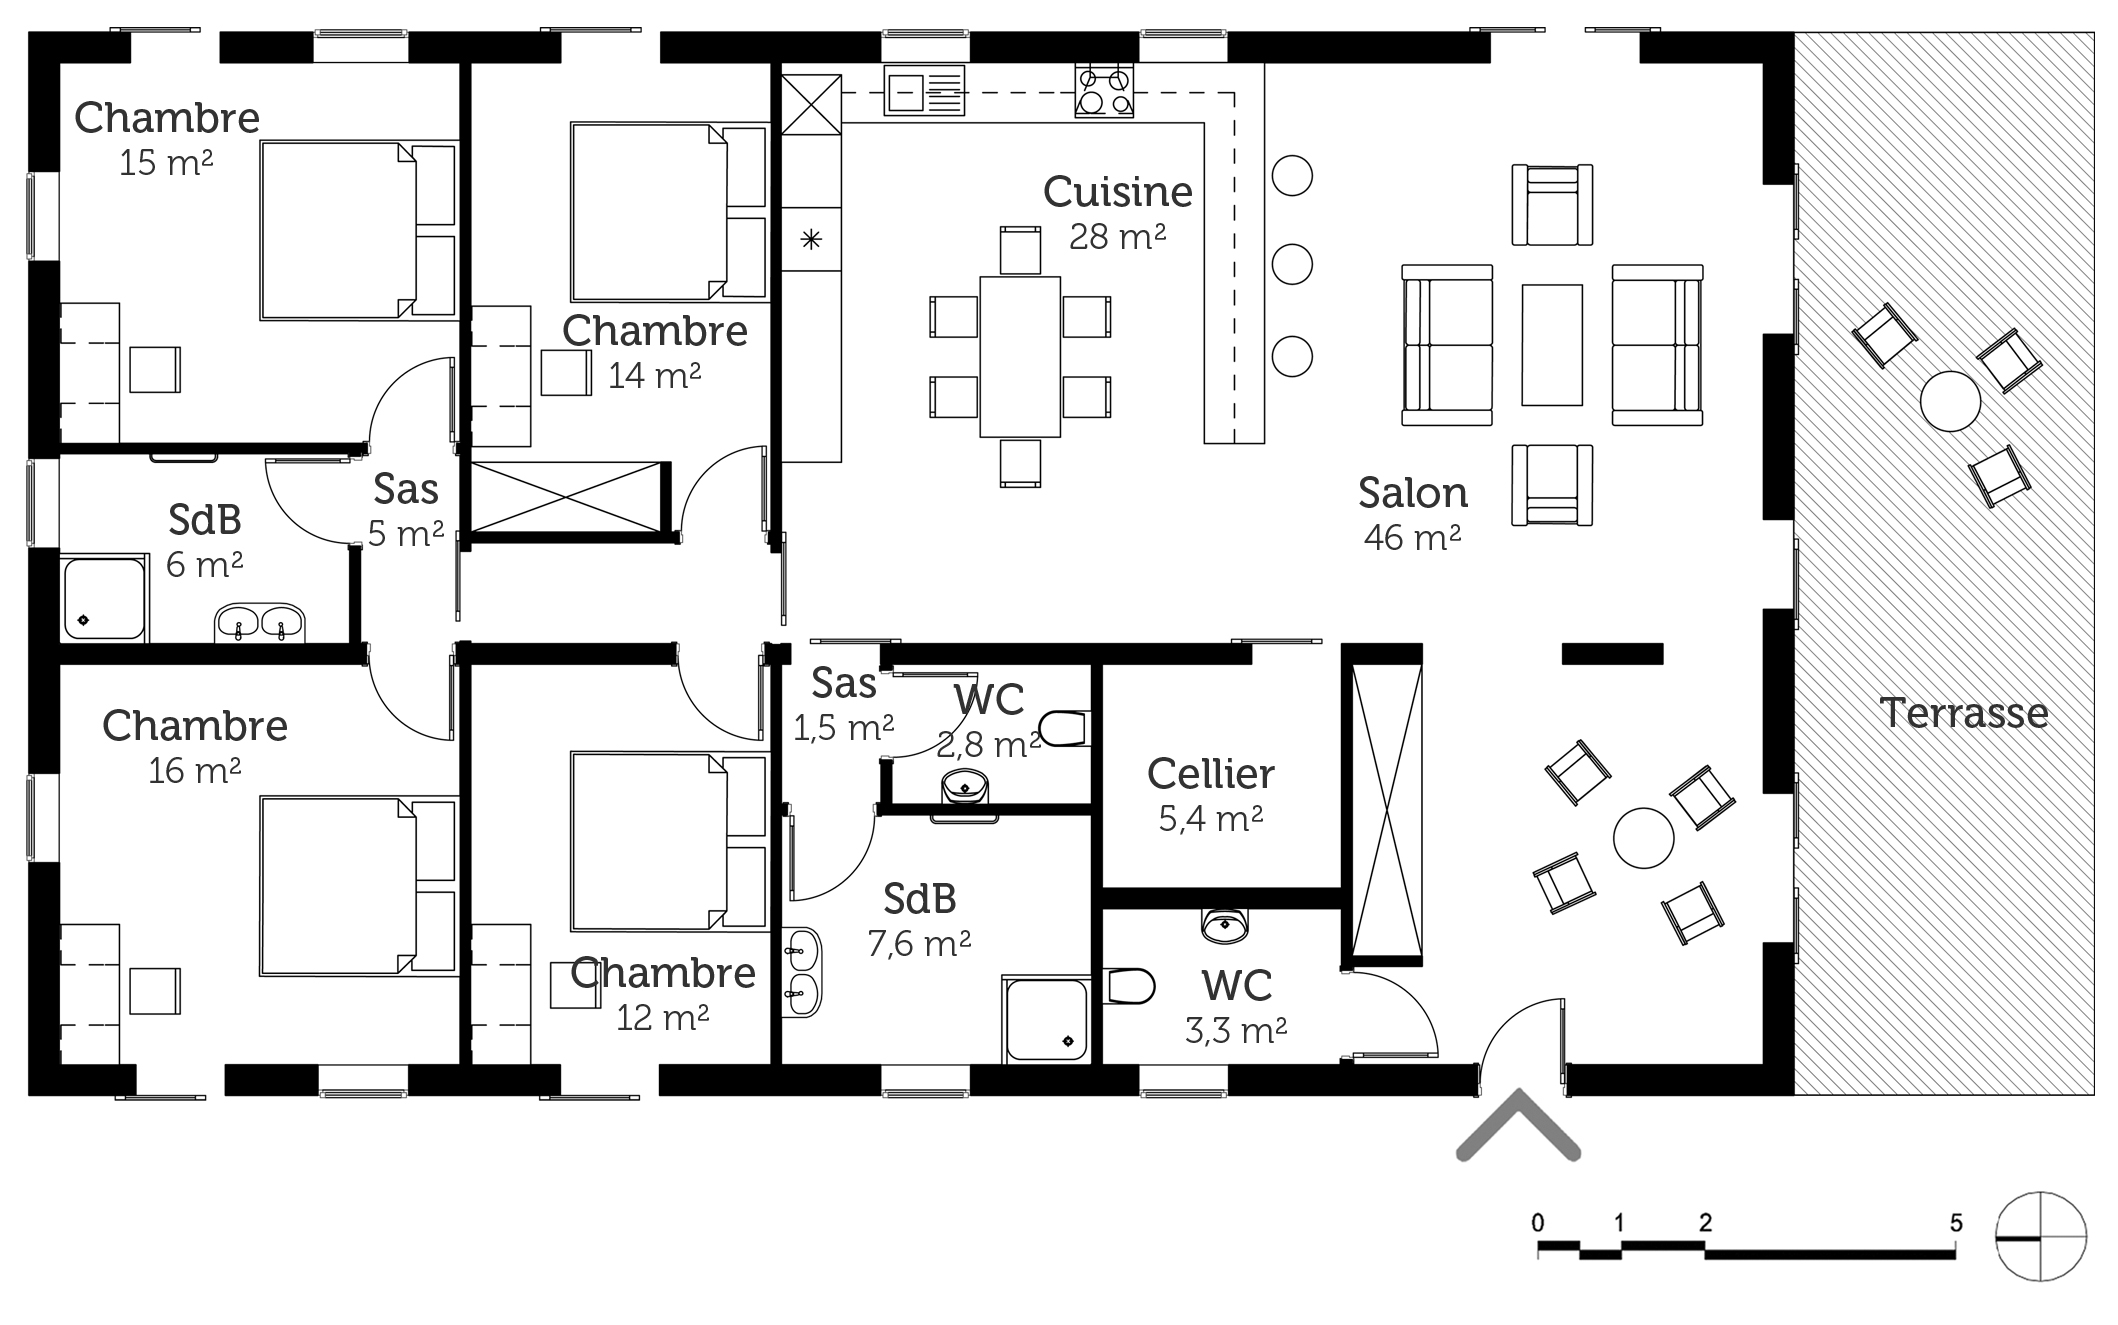 Plan maison plain pied gratuit pdf